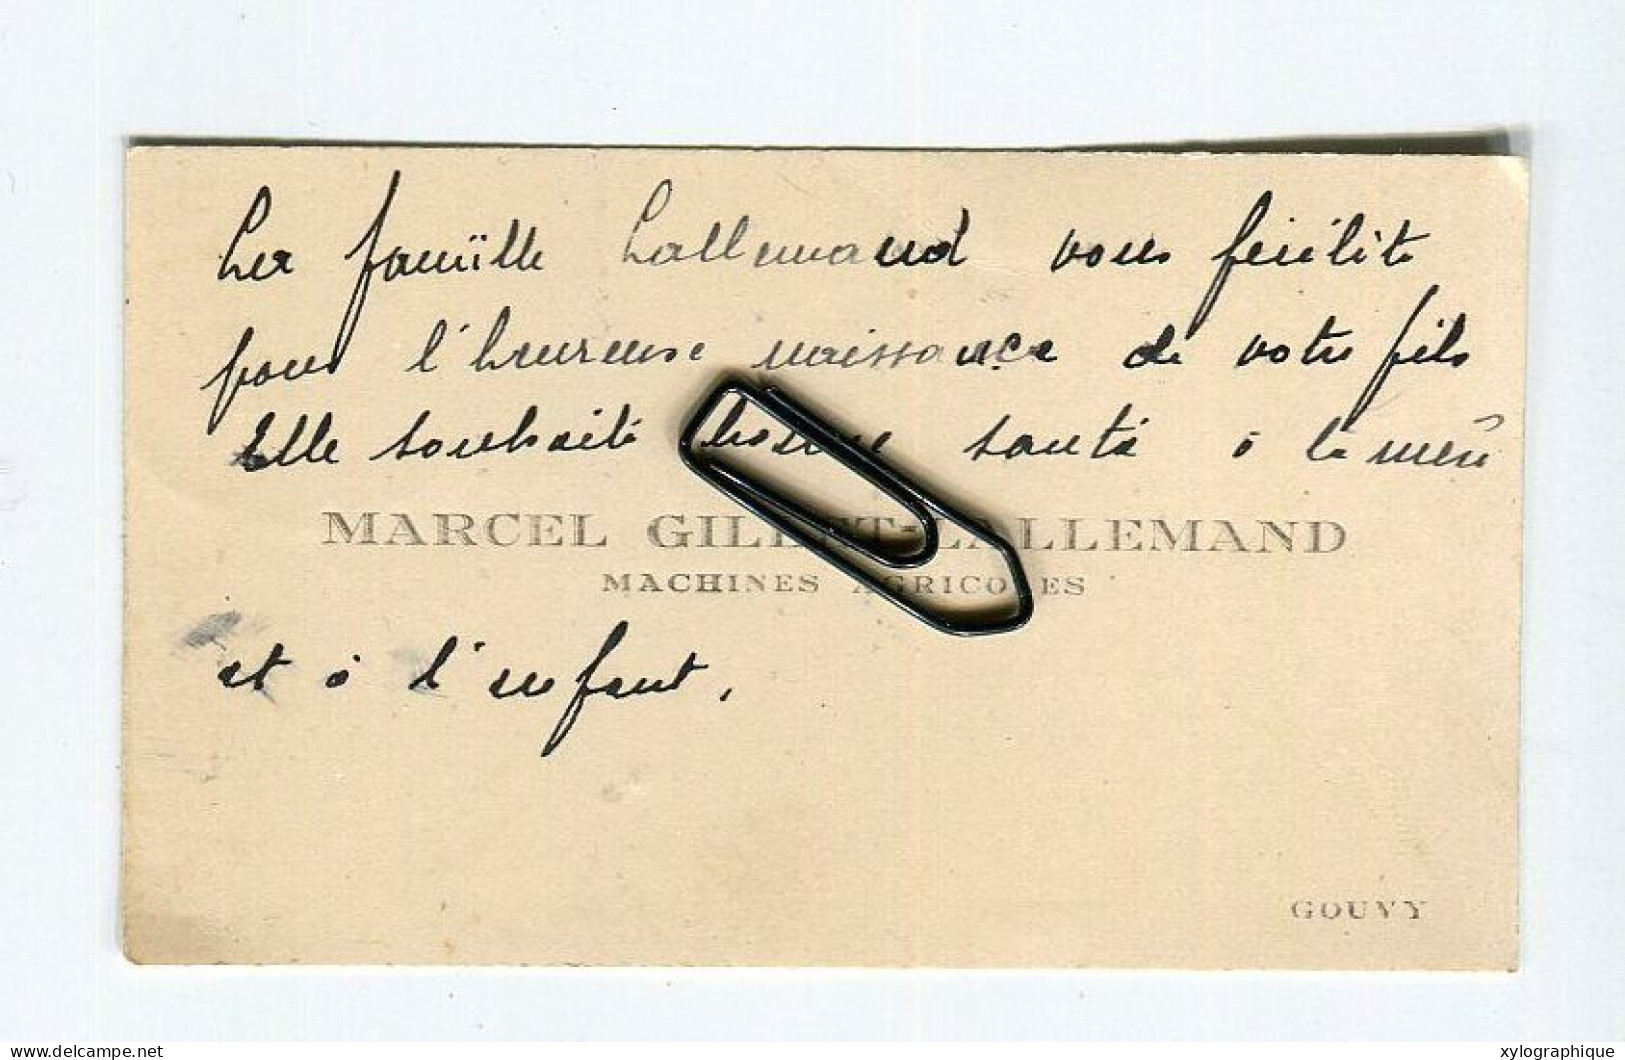 Gouvy Limerlé - Carte De Visite Ca. 1930, Marcel Gillet Lallemand, Machines Agricoles, Pour Famille Gérardy Warland - Visiting Cards